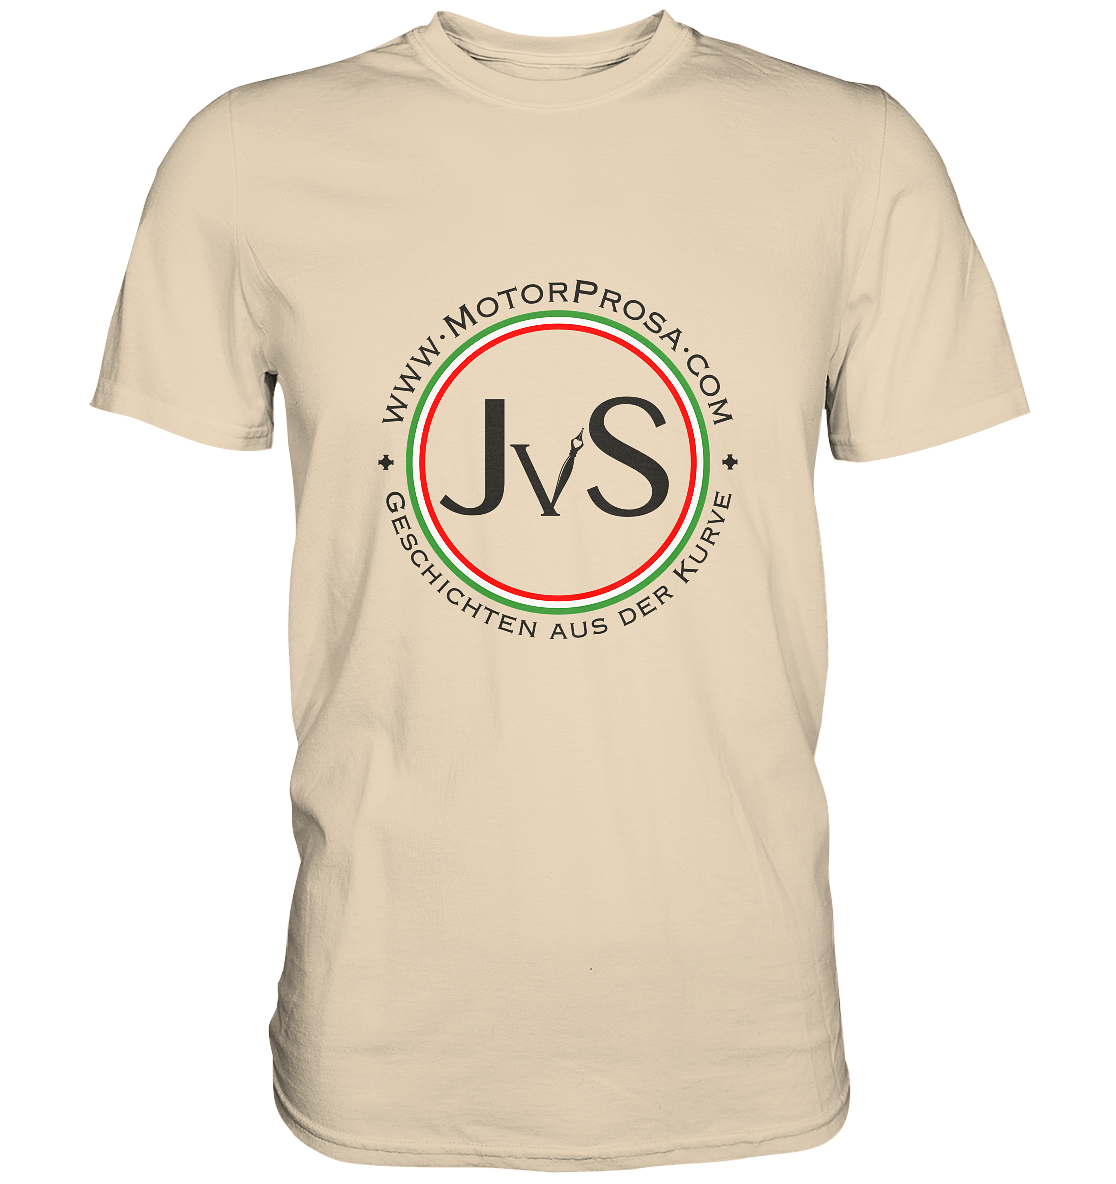 "MotorProsa" | Shirt mit großem Brust-Logo in dunklem Design